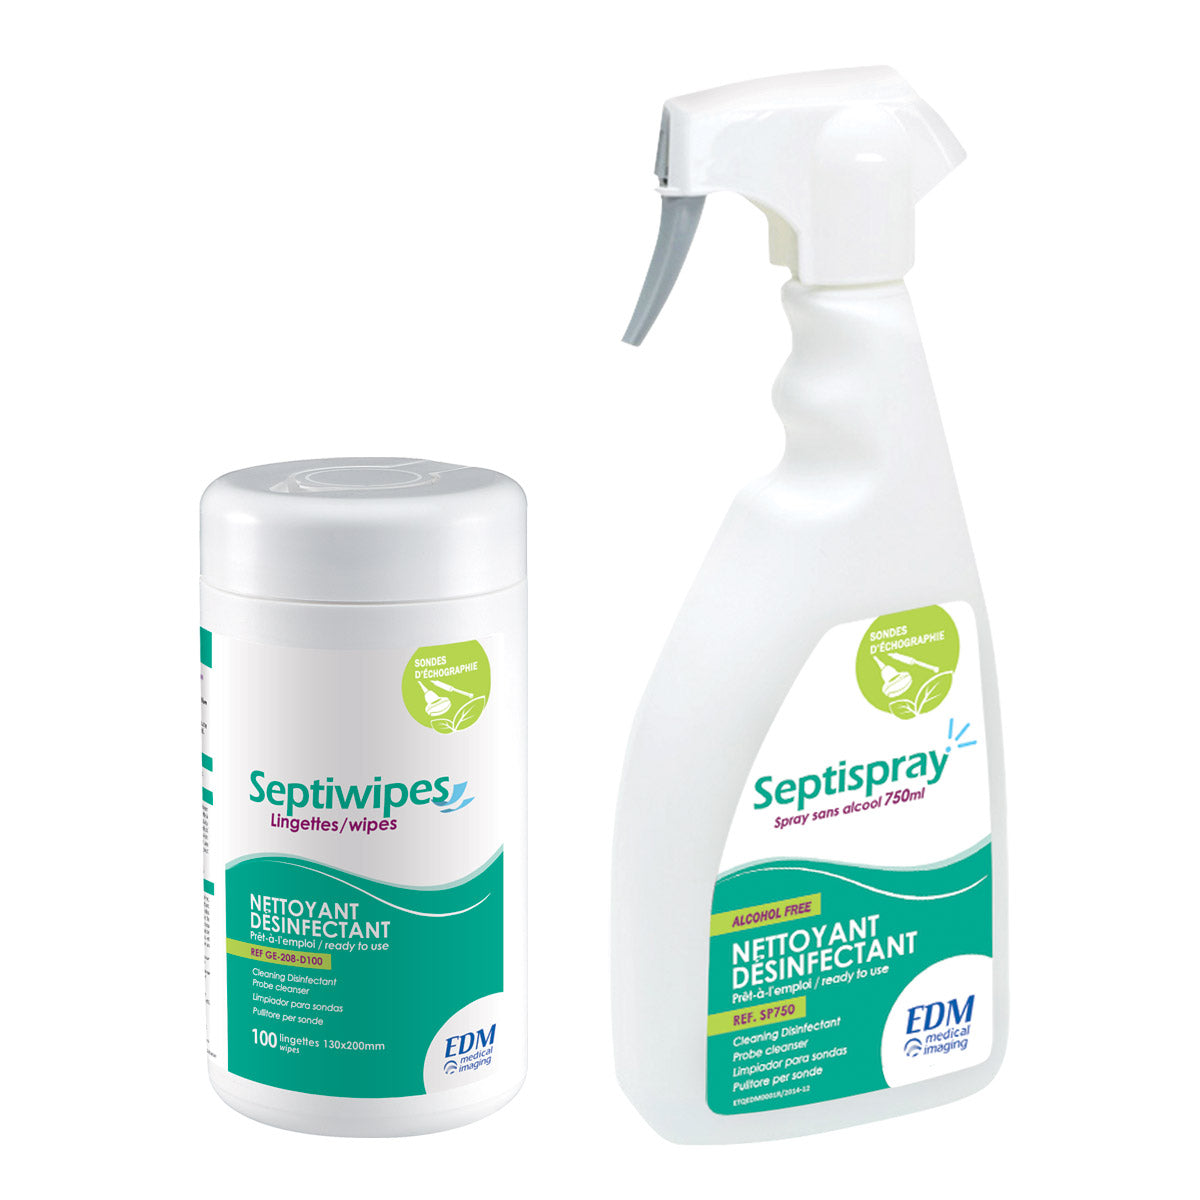 Anios'Clean Excel D détergent pré-désinfectant liquide bactéricide,  fongicide et virucide